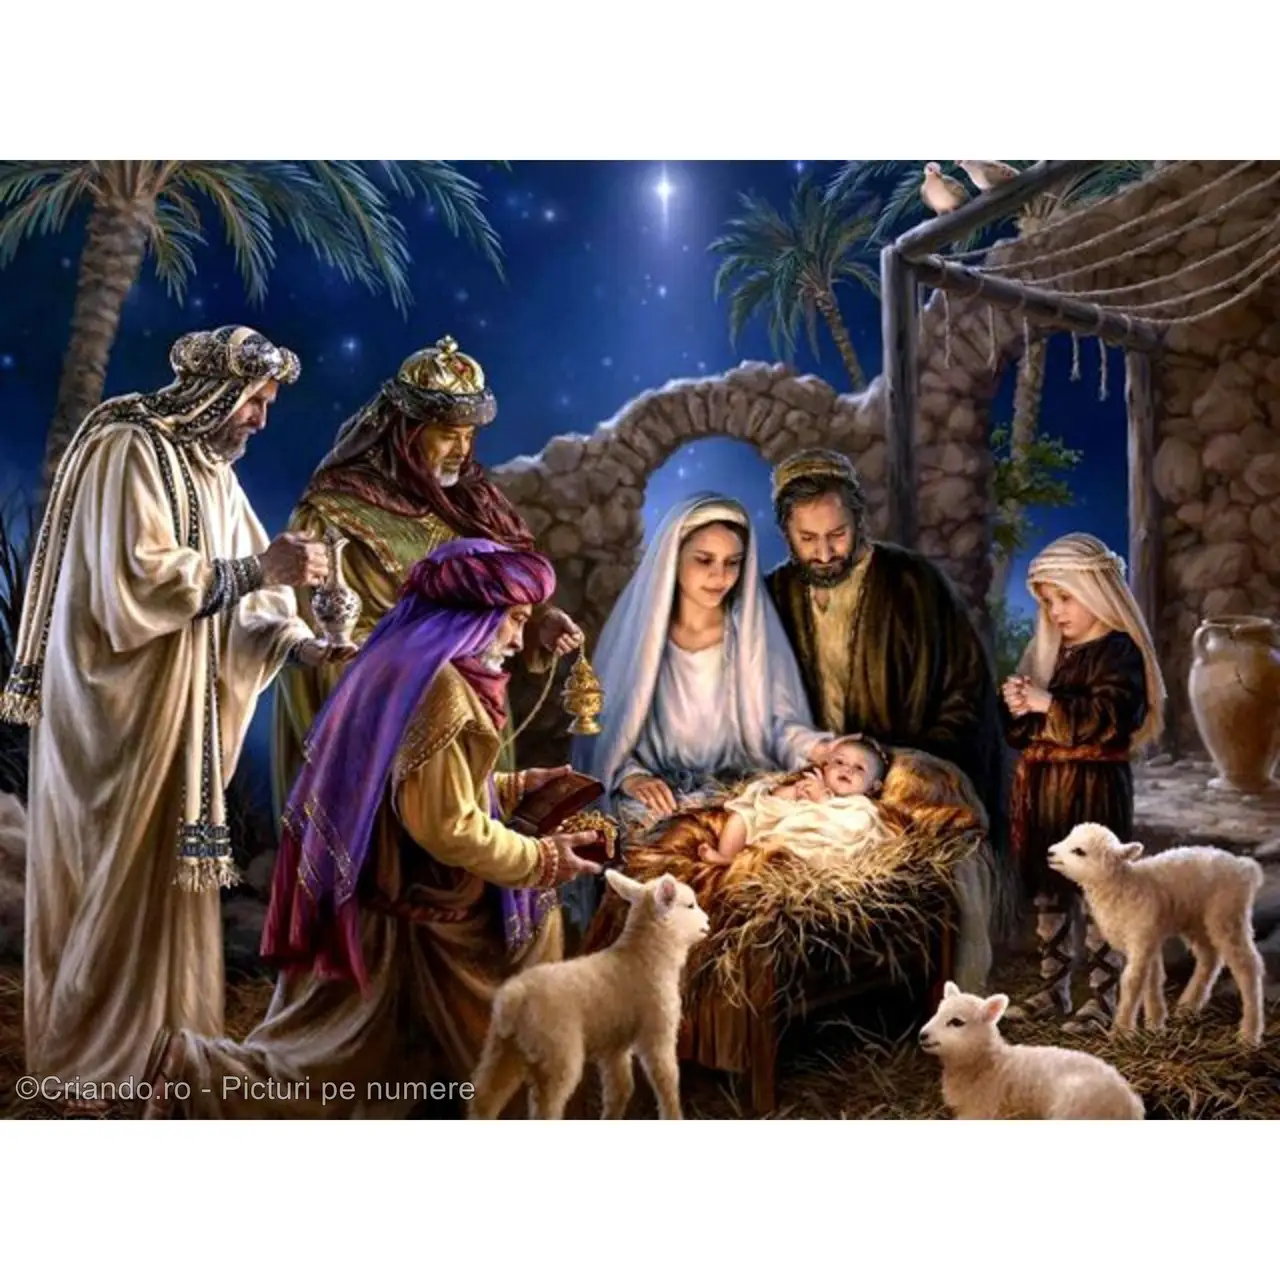 Picturi pe numere Religioase 40x50 cm Nasterea Domnului Isus Hristos 25 Decembrie PDP1483